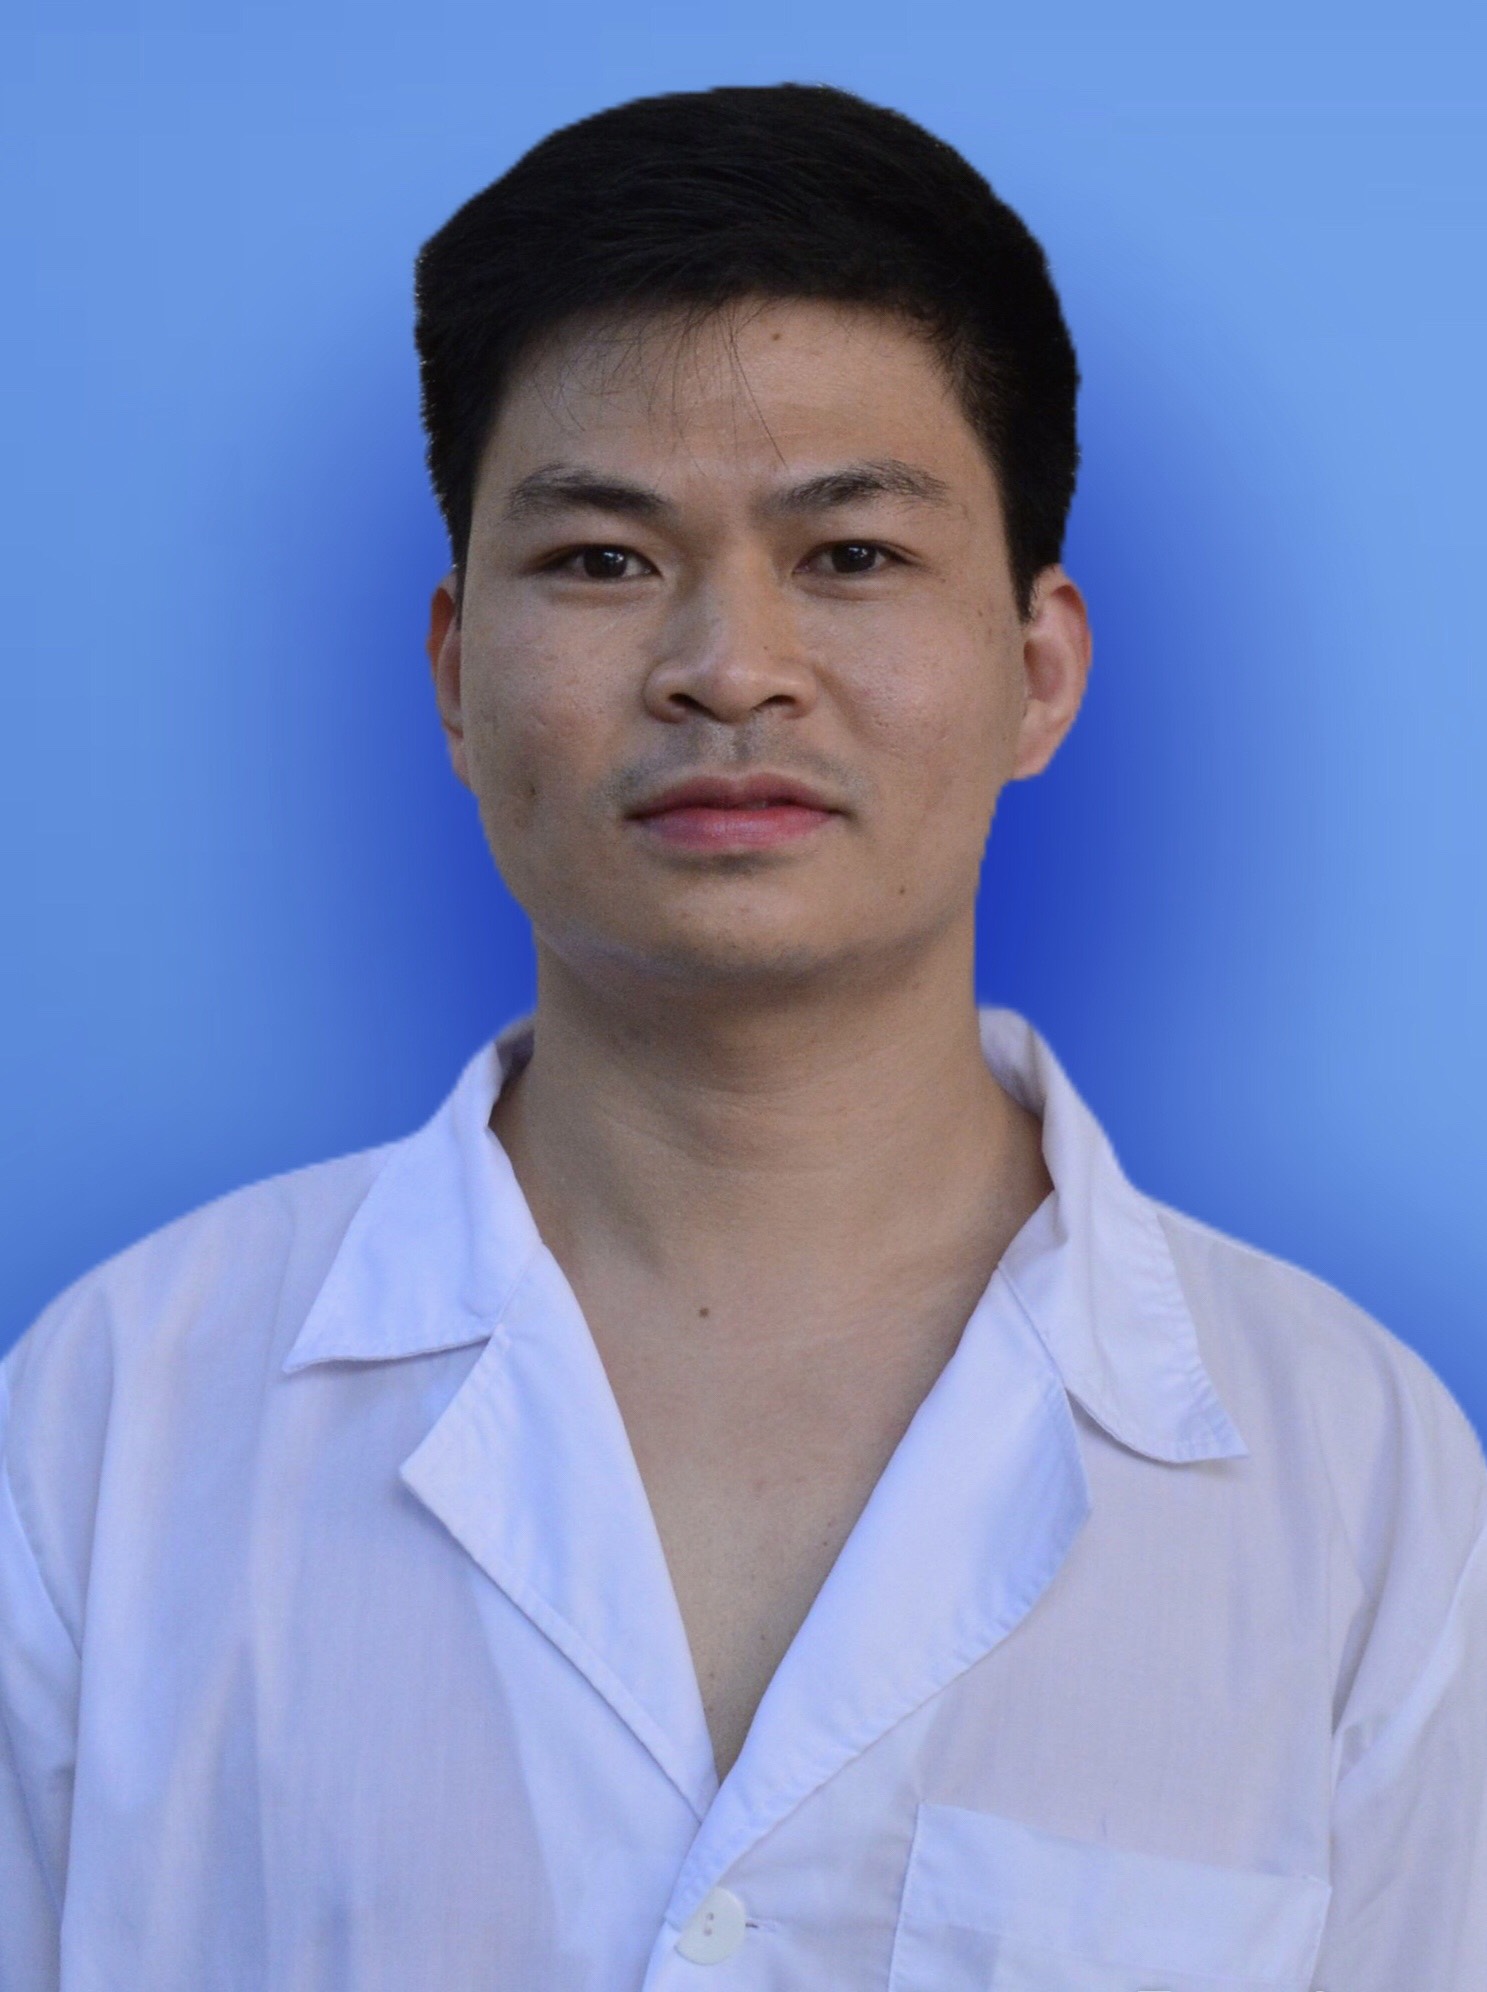 Hàn lâm quốc gia – BS. Nguyễn Văn Nghĩa – một chuyên gia y tế có tầm nhìn đến xa trong giải quyết các vấn đề sức khỏe hiện nay. Hãy cùng xem hình ảnh của ông ấy để tìm hiểu thêm về sự tiên phong của y học đại cương.